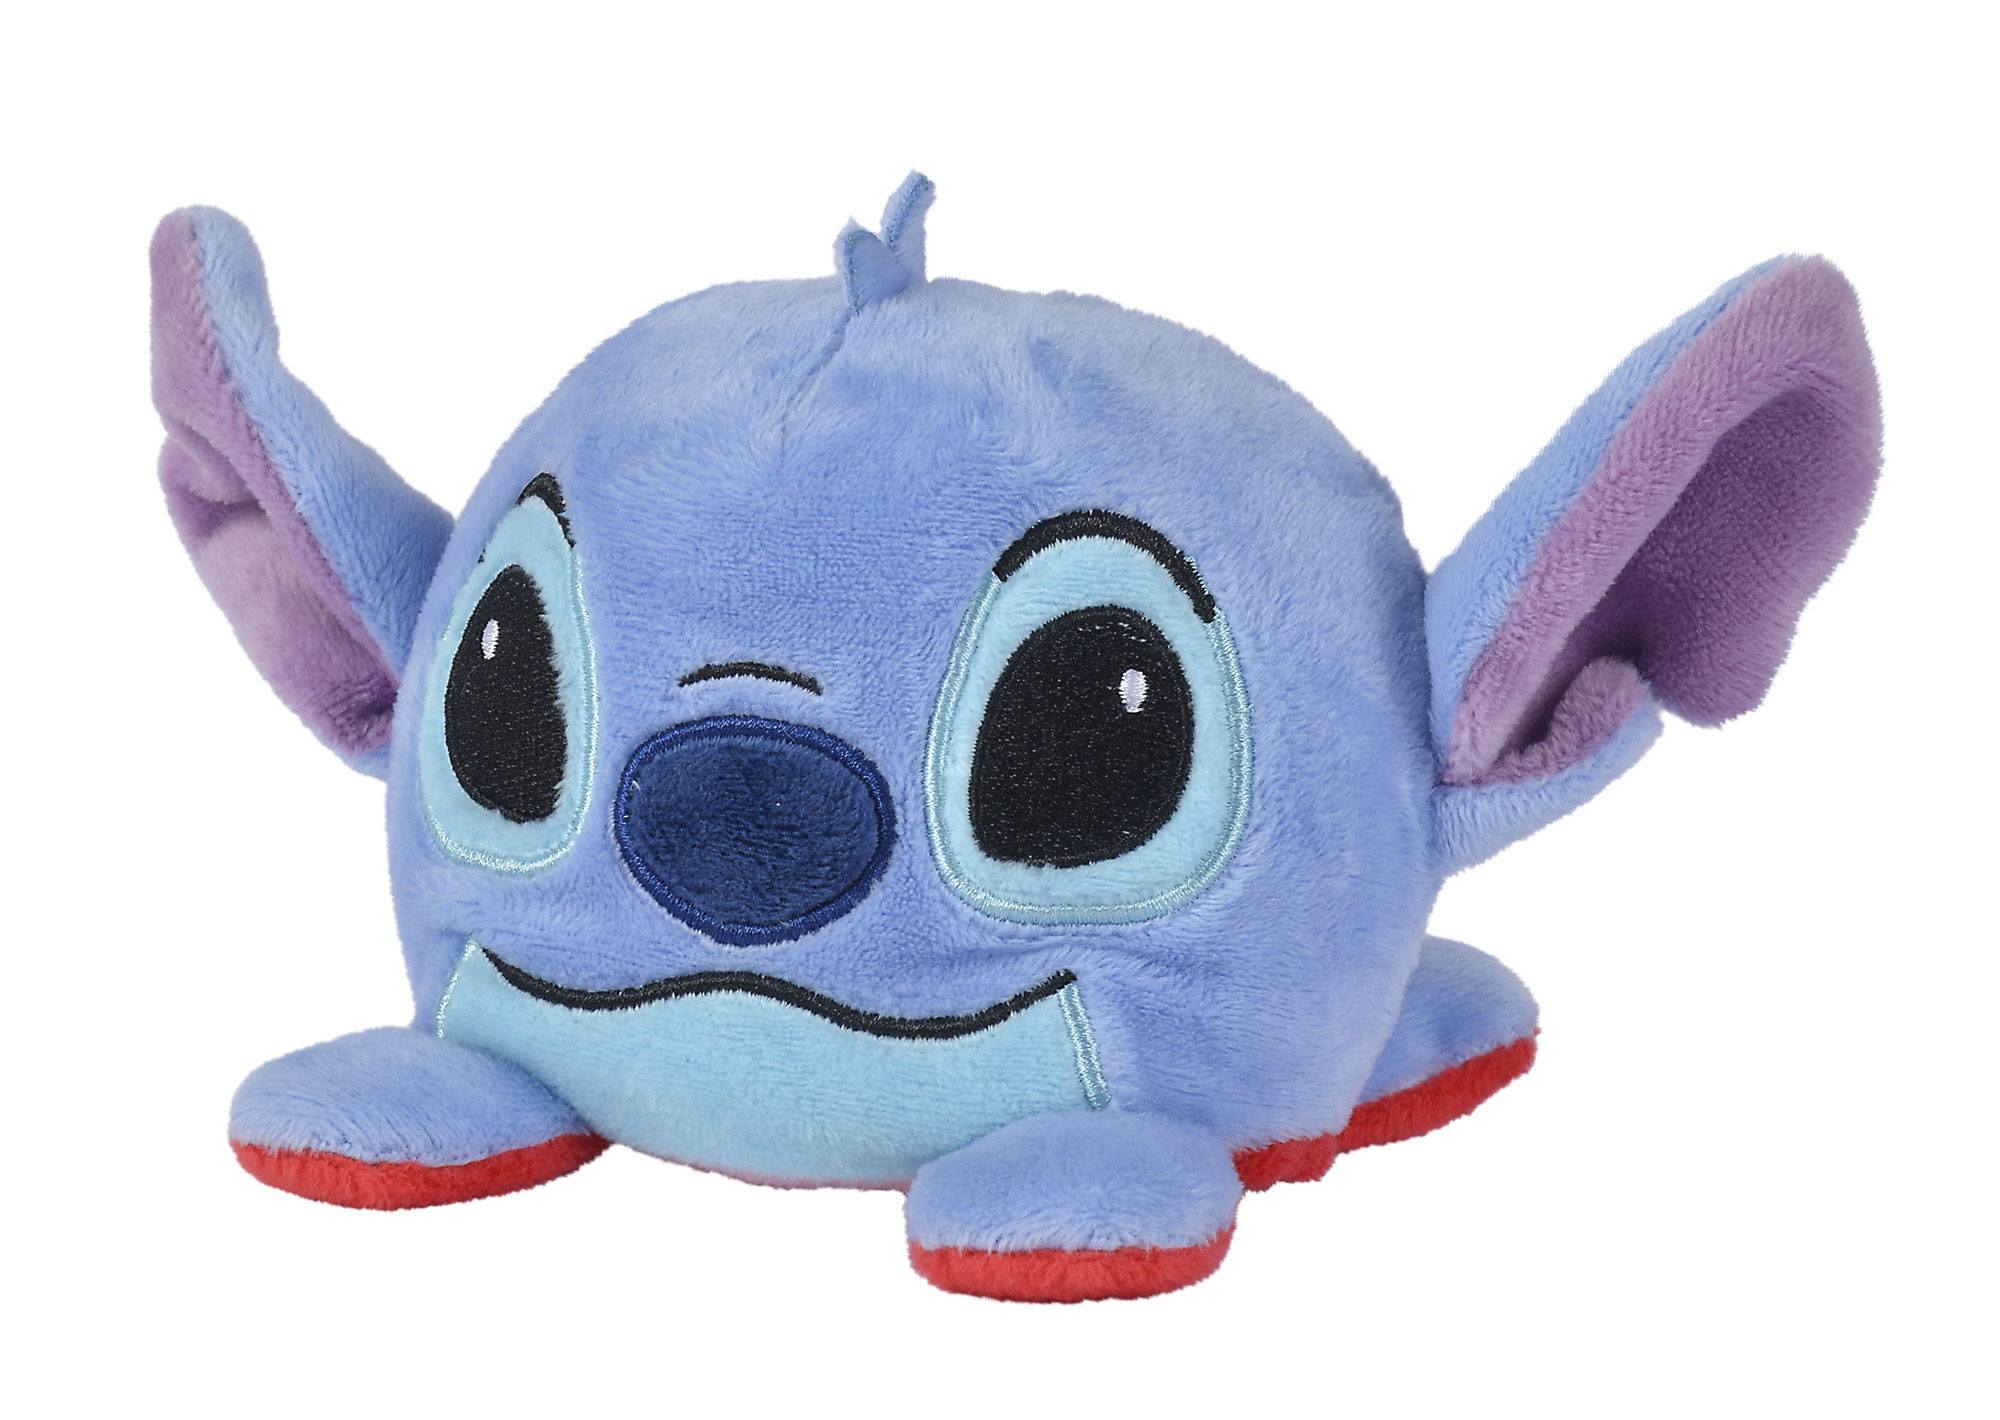 Figurine Pop Lilo et Stitch [Disney] pas cher : Angel - Porte-clés